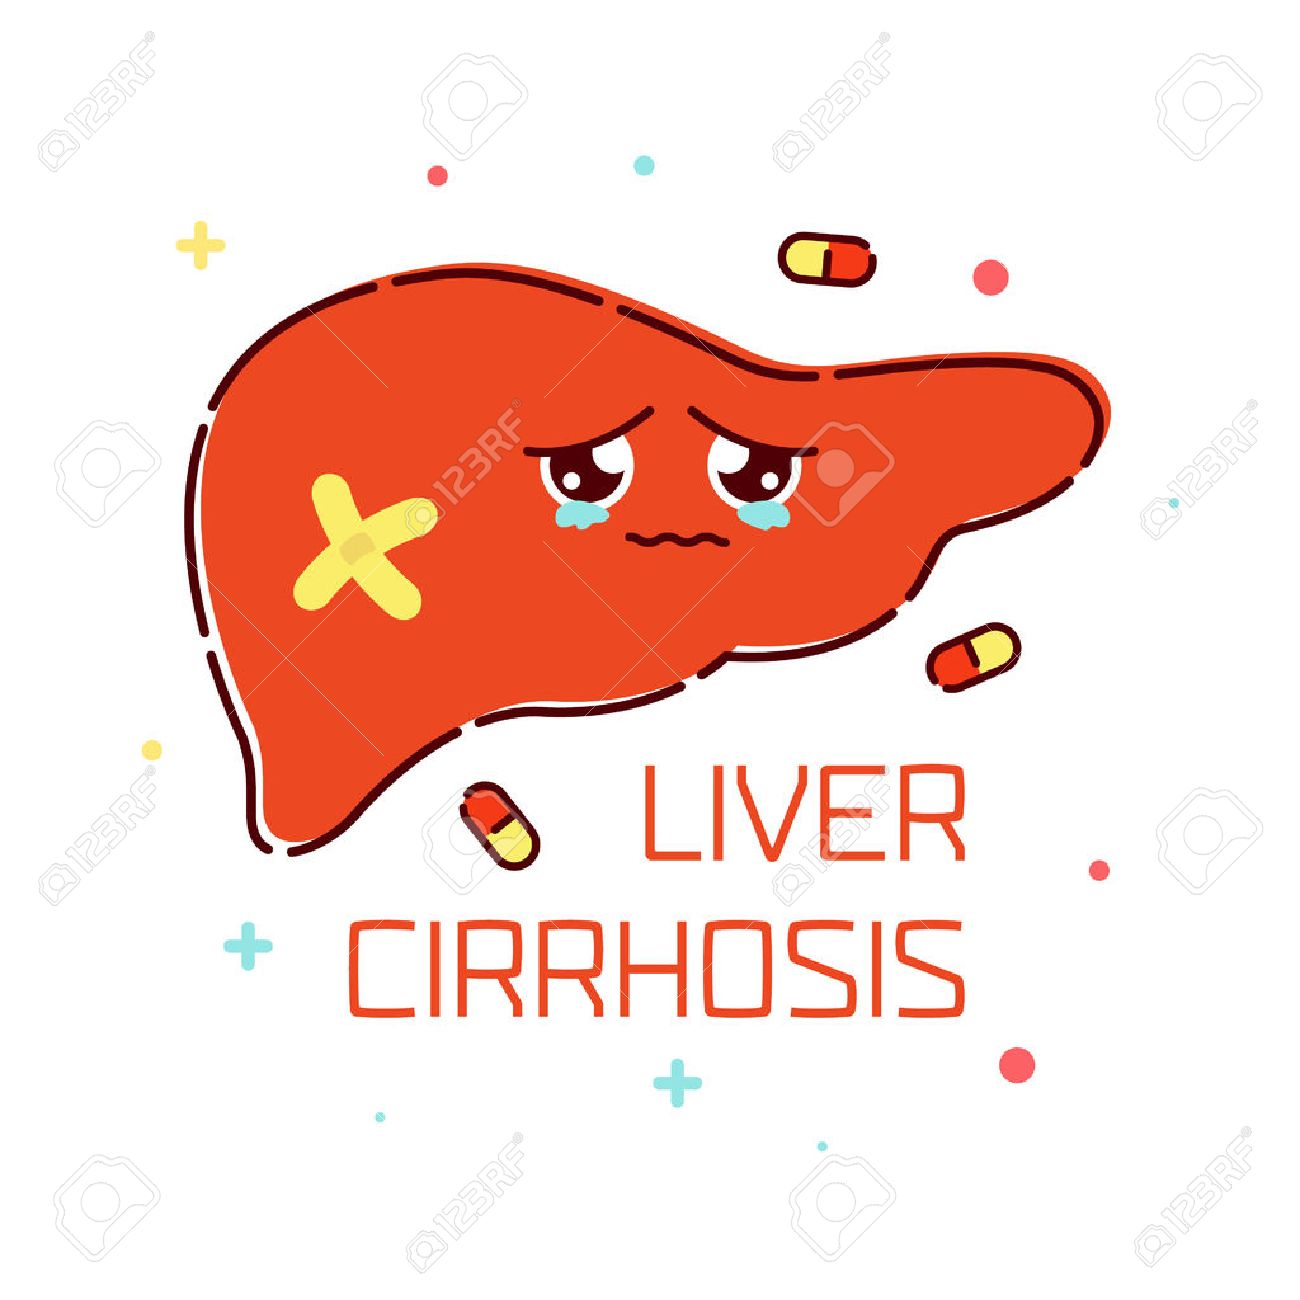 Liver Cirrhosis Awareness Poster With Sad Cartoon Character